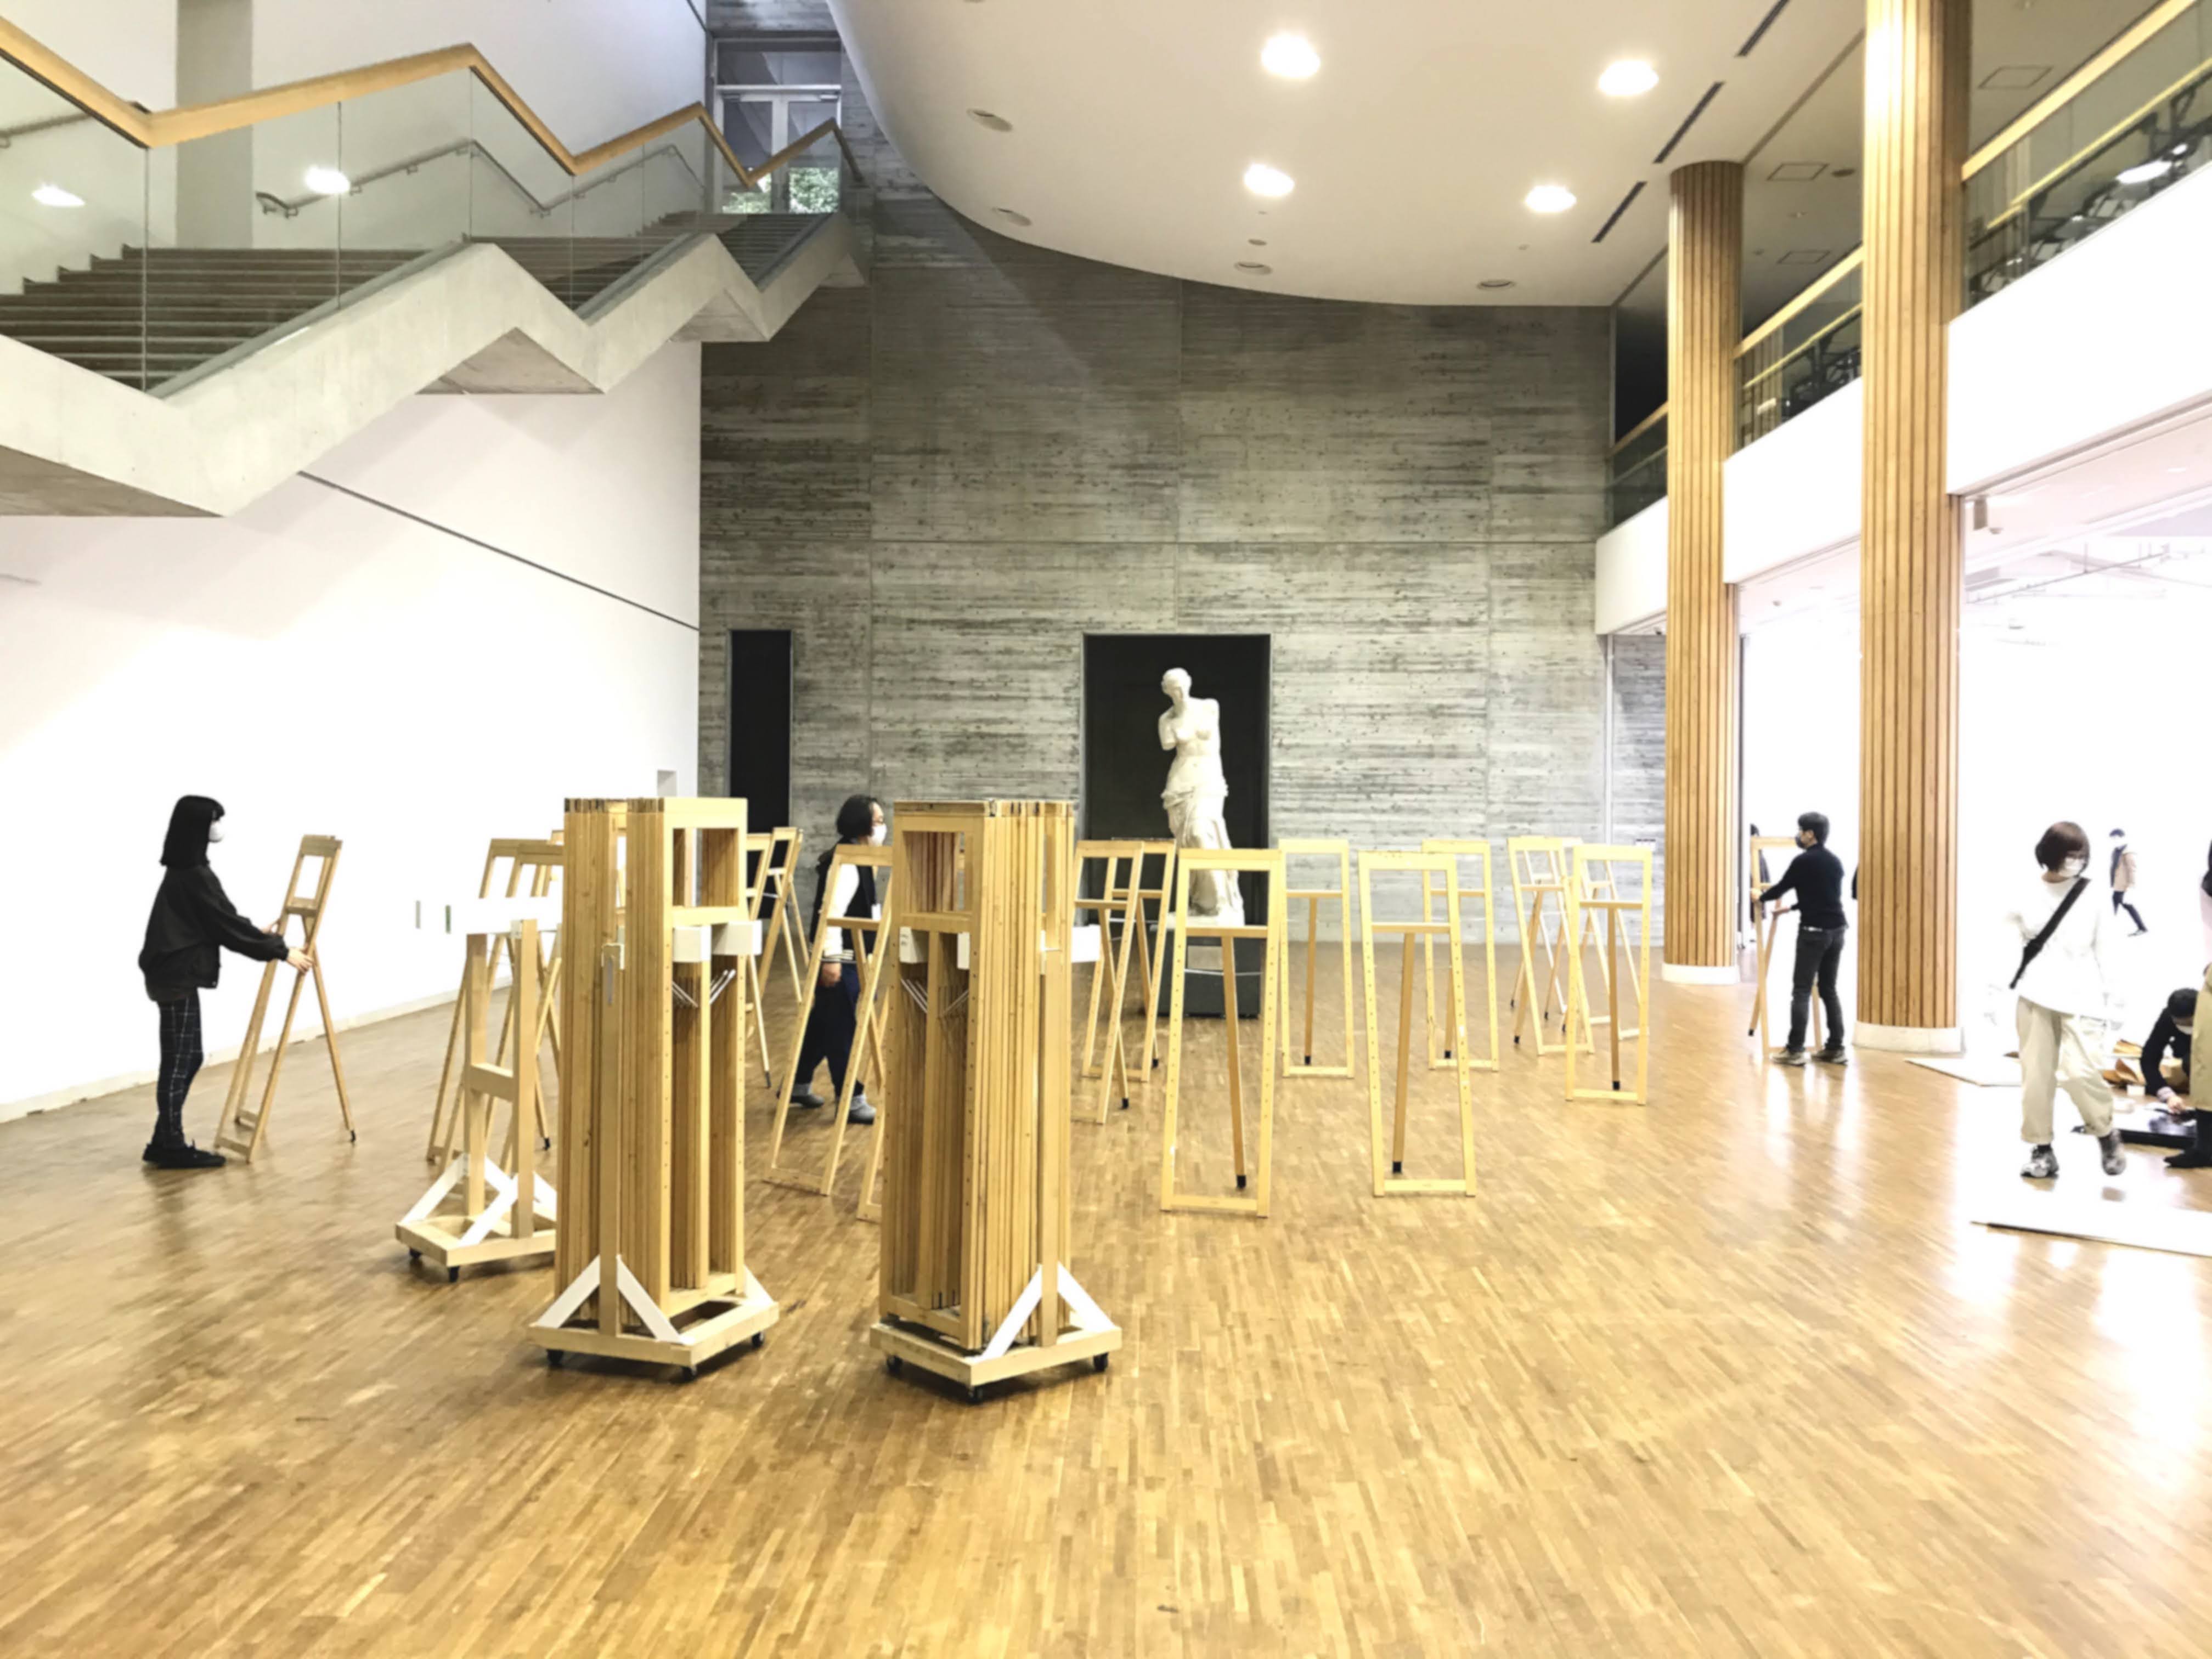 京都芸術大学 ミロのヴィーナス像を囲み なにやらイーゼルを立てています 明日は 第16回 ミロのヴィーナス デッサン 大会 を開催 大賞なし のときもあるほど厳密な大会 通学部のみならず 通信教育部の学生のみなさんも参加されています という